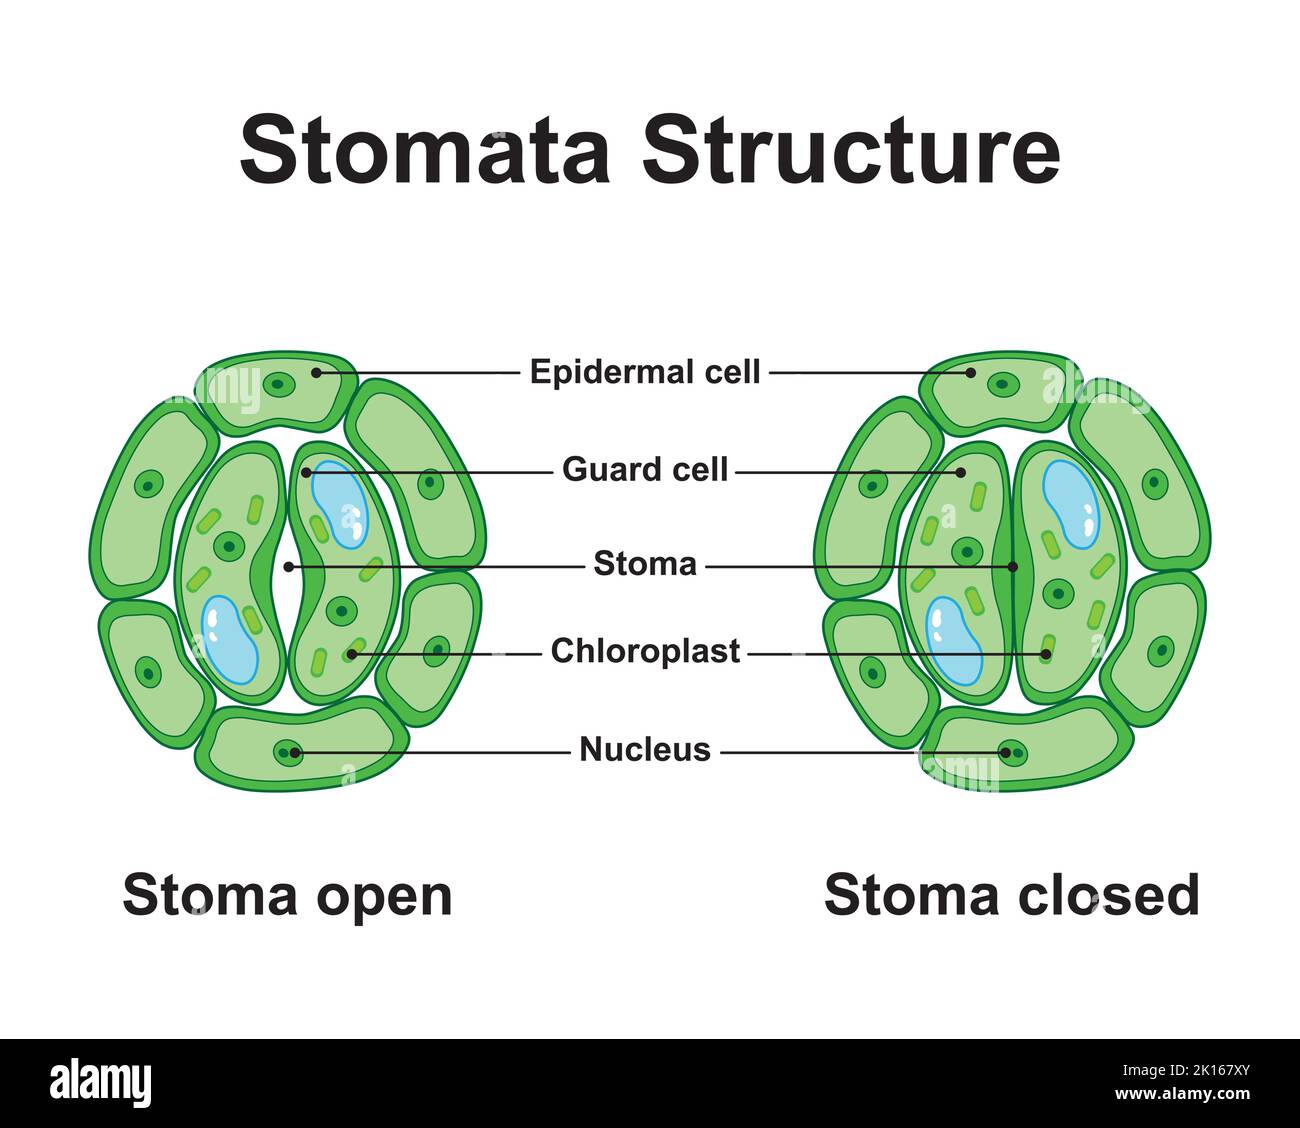 Wissenschaftliche Gestaltung der Stomata-Struktur. Bunte Symbole. Vektorgrafik. Stock Vektor